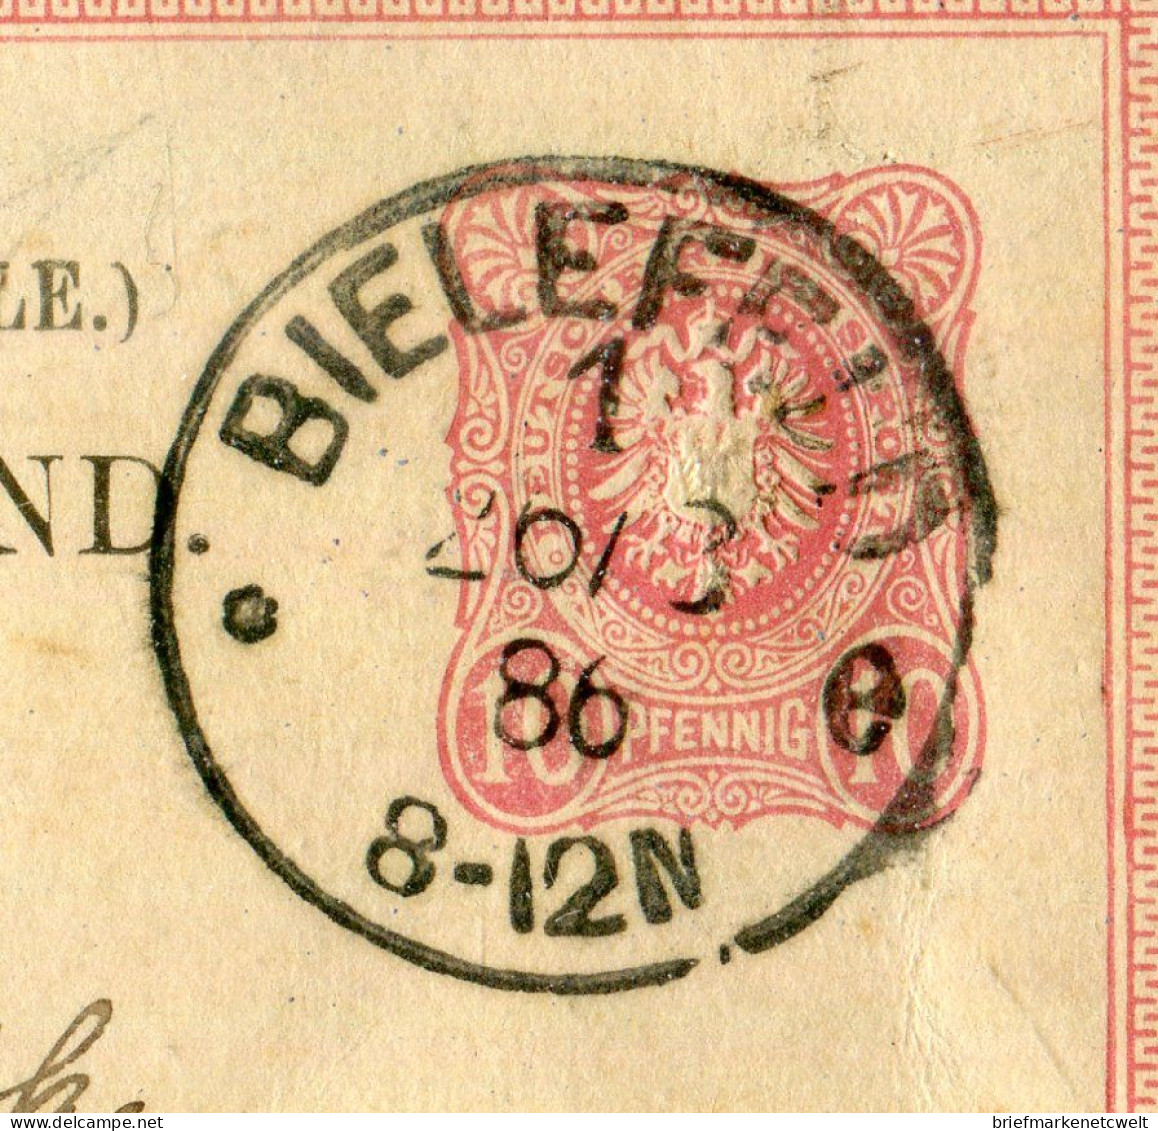 "DEUTSCHES REICH" 1886, "Klaucke"-K1 "BIELEFELD" Auf Postkarte Nach Italien (B1177) - Postkarten